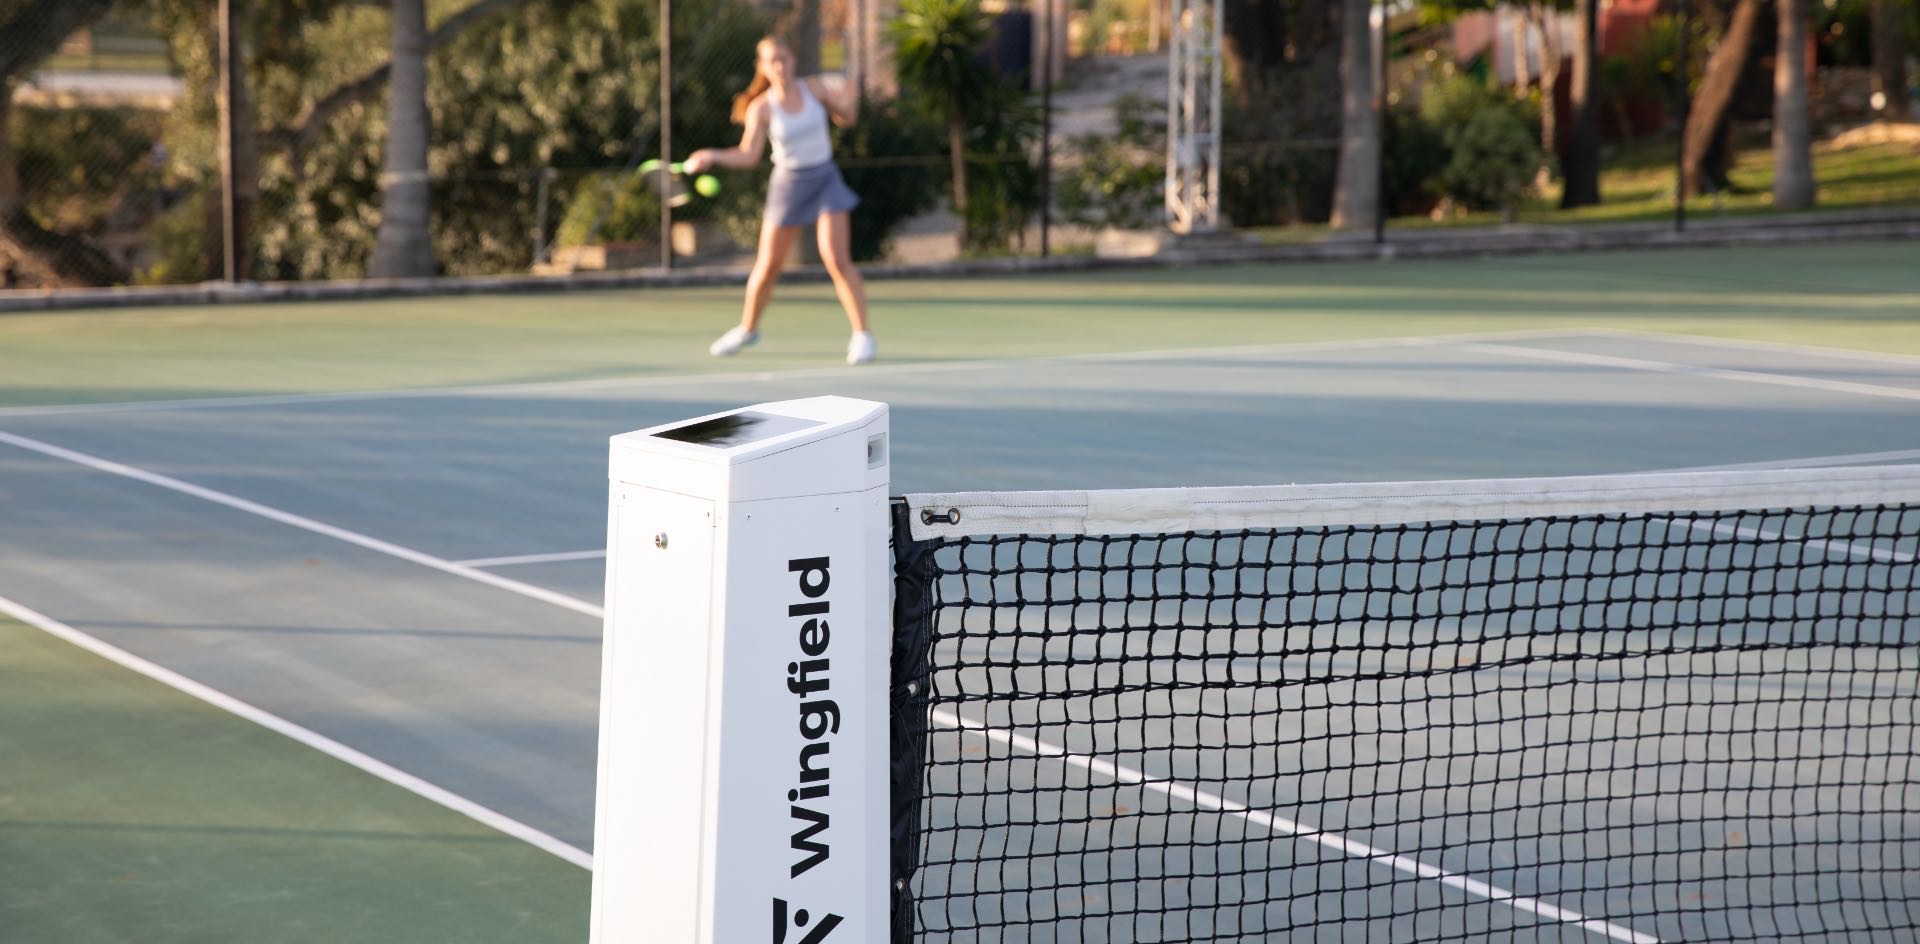 Die weiße Wingfield Box auf einem Hartplatz. Im Hintergrund eine Tennisspielerin.